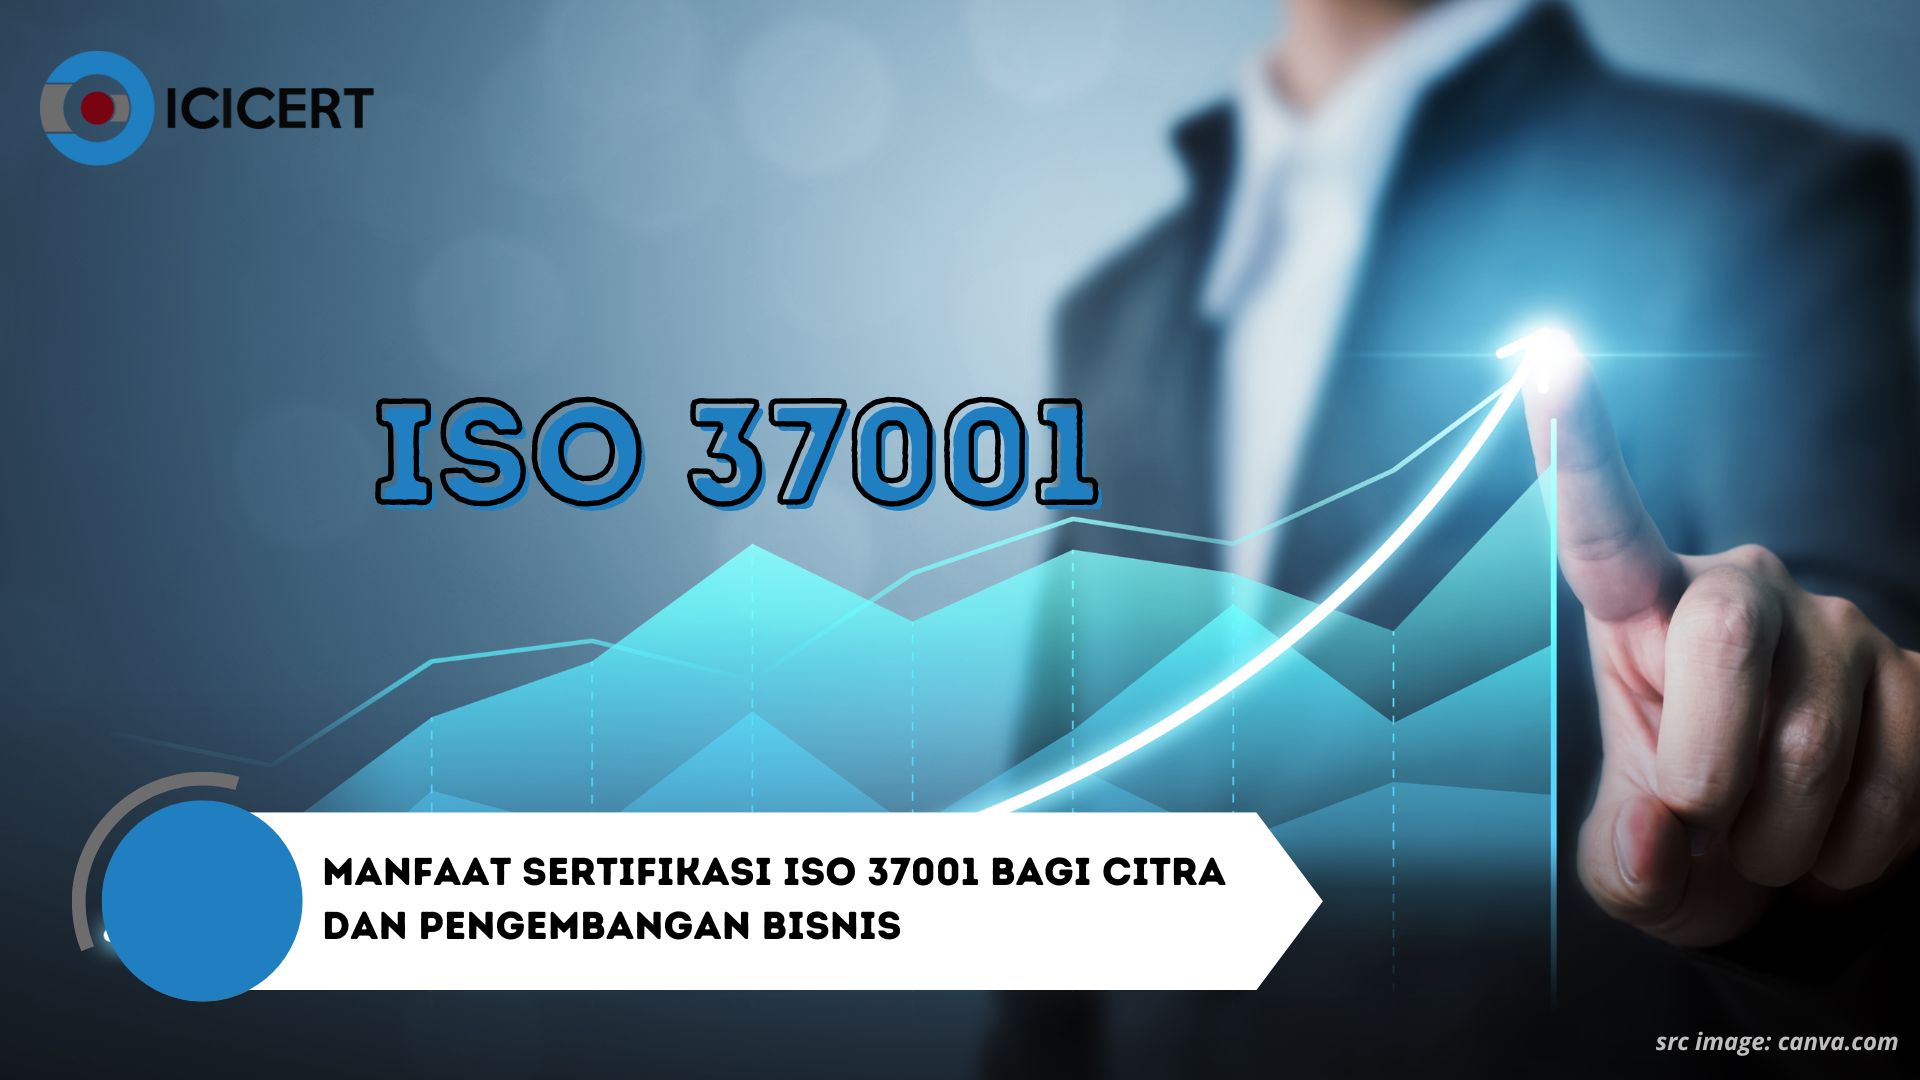 Manfaat Sertifikasi ISO 37001 Bagi Citra dan Pengembangan Bisnis